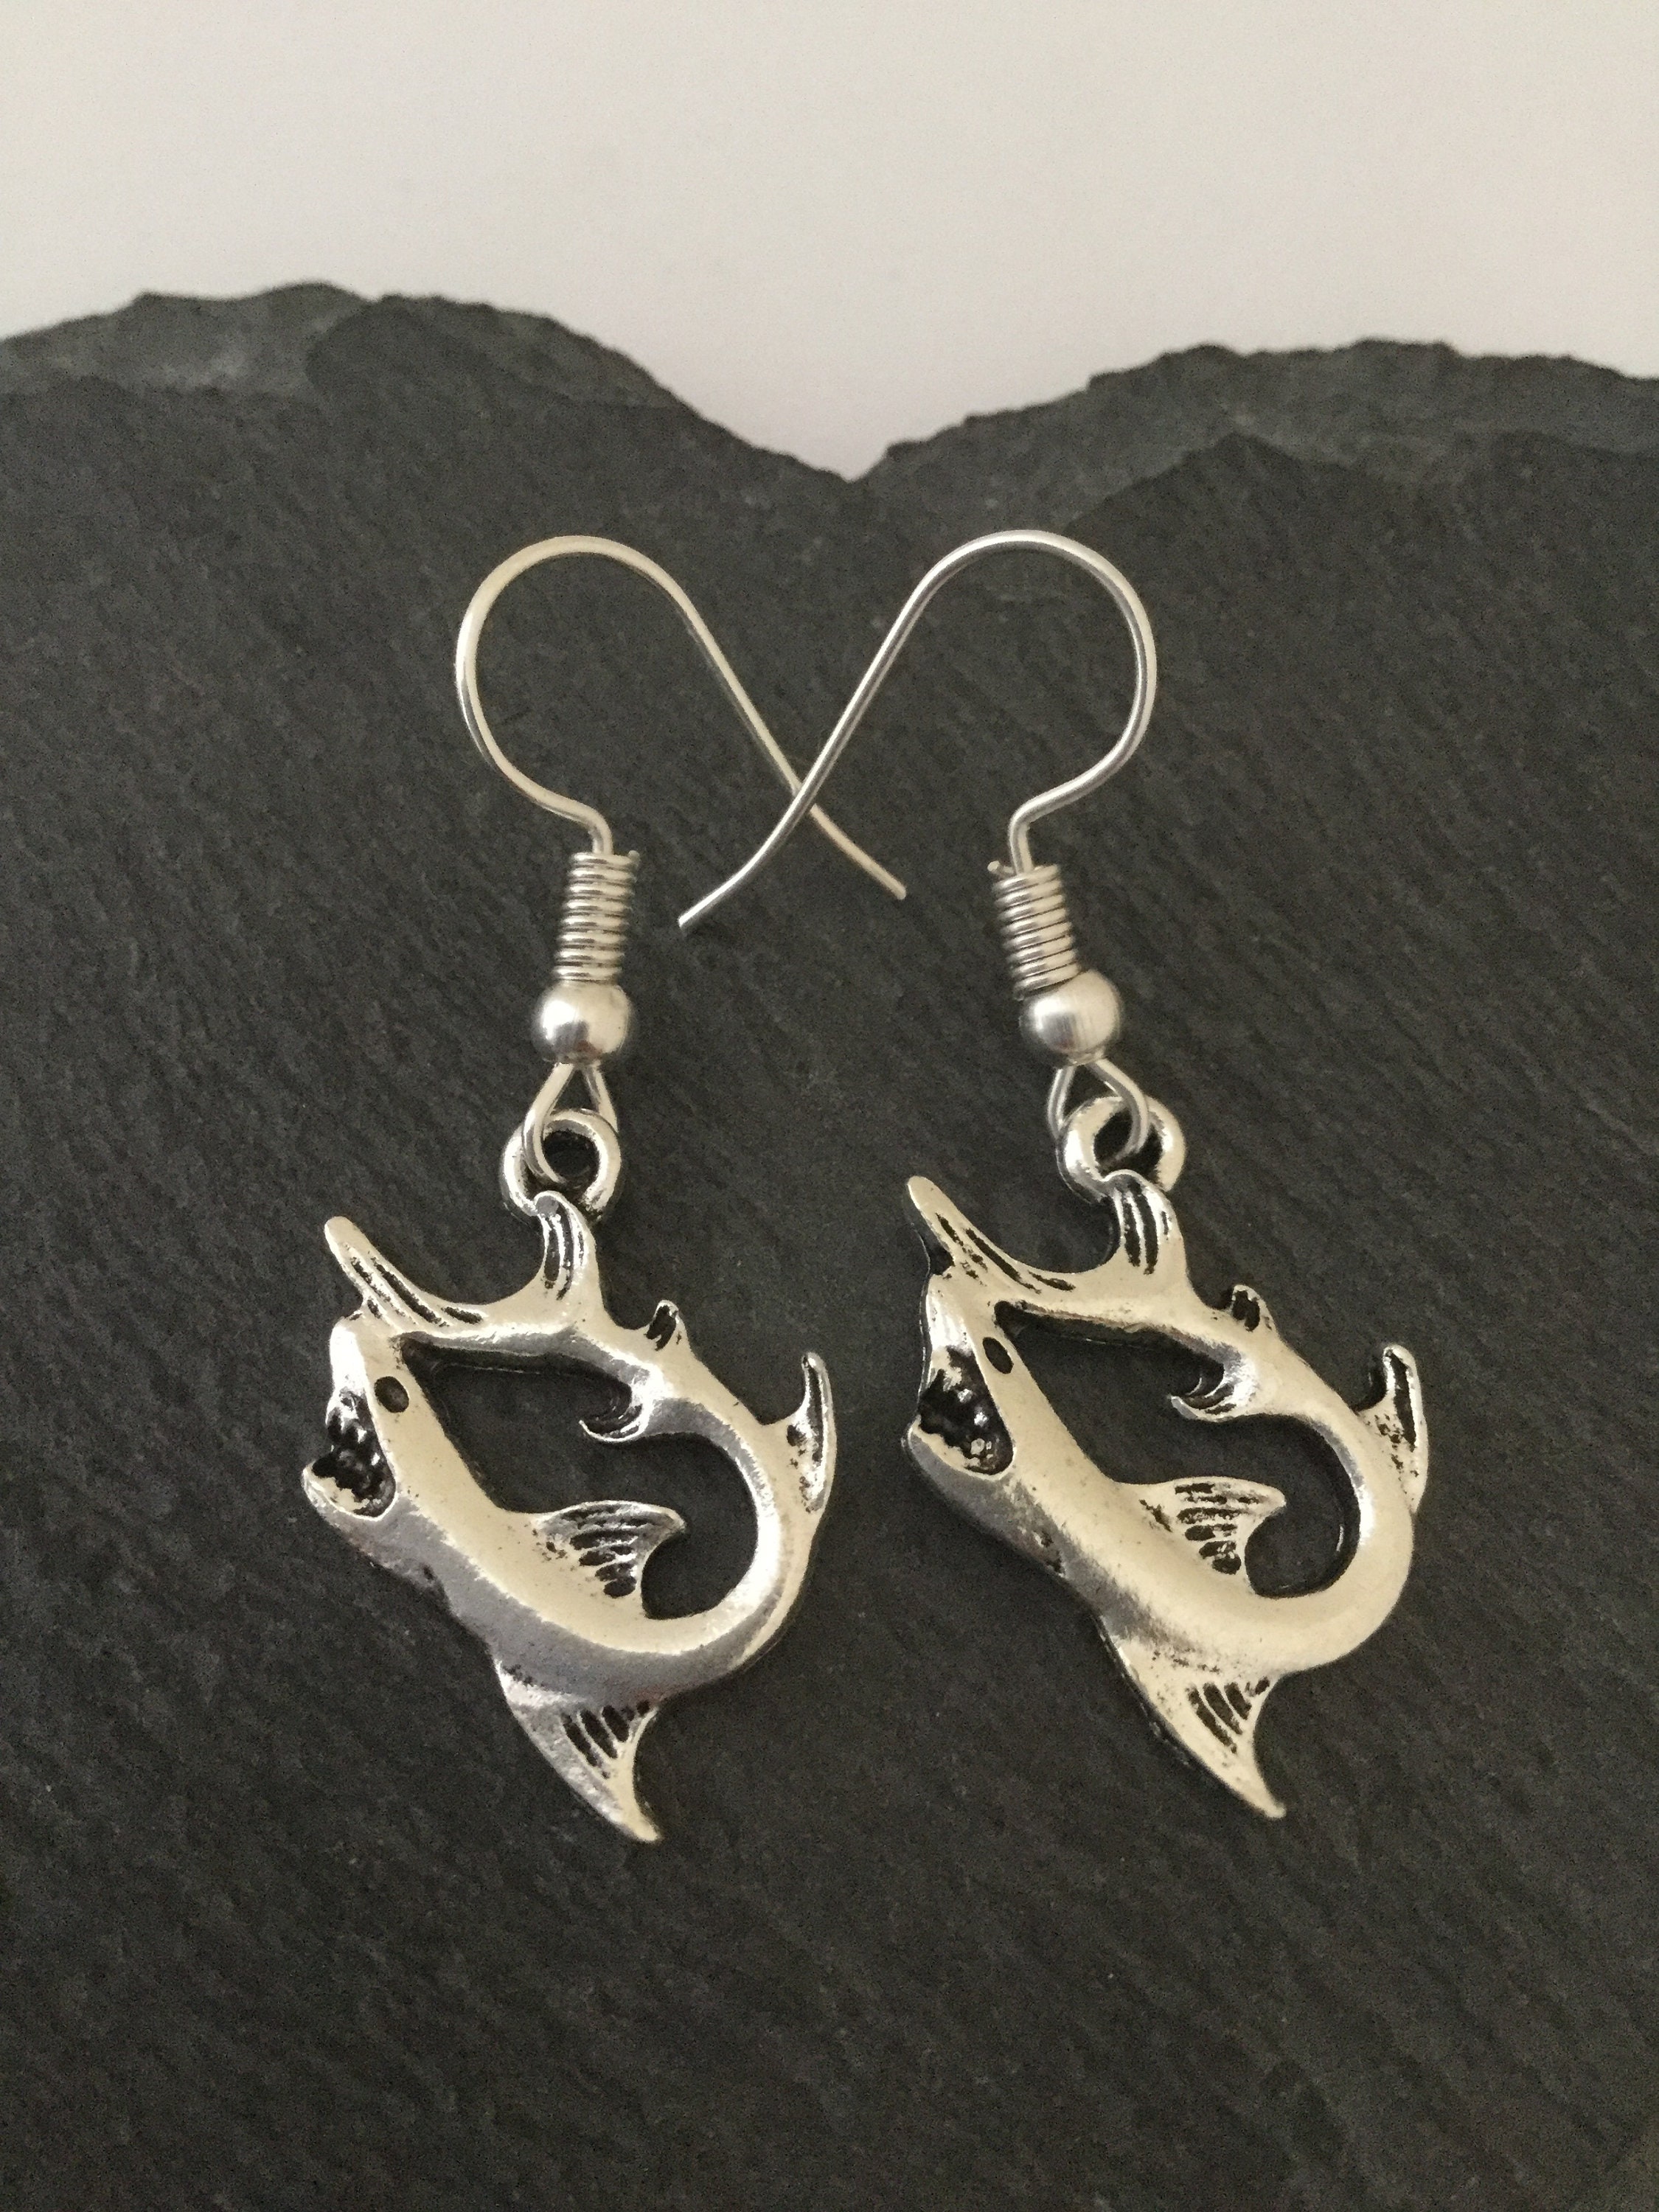 Shark Earrings / Shark Jewellery/ Shark Gift /sealife Earrings / Sealife  Jewellery / Animal Earrings / Animal Jewellery / Animal Lover Gift -   Australia